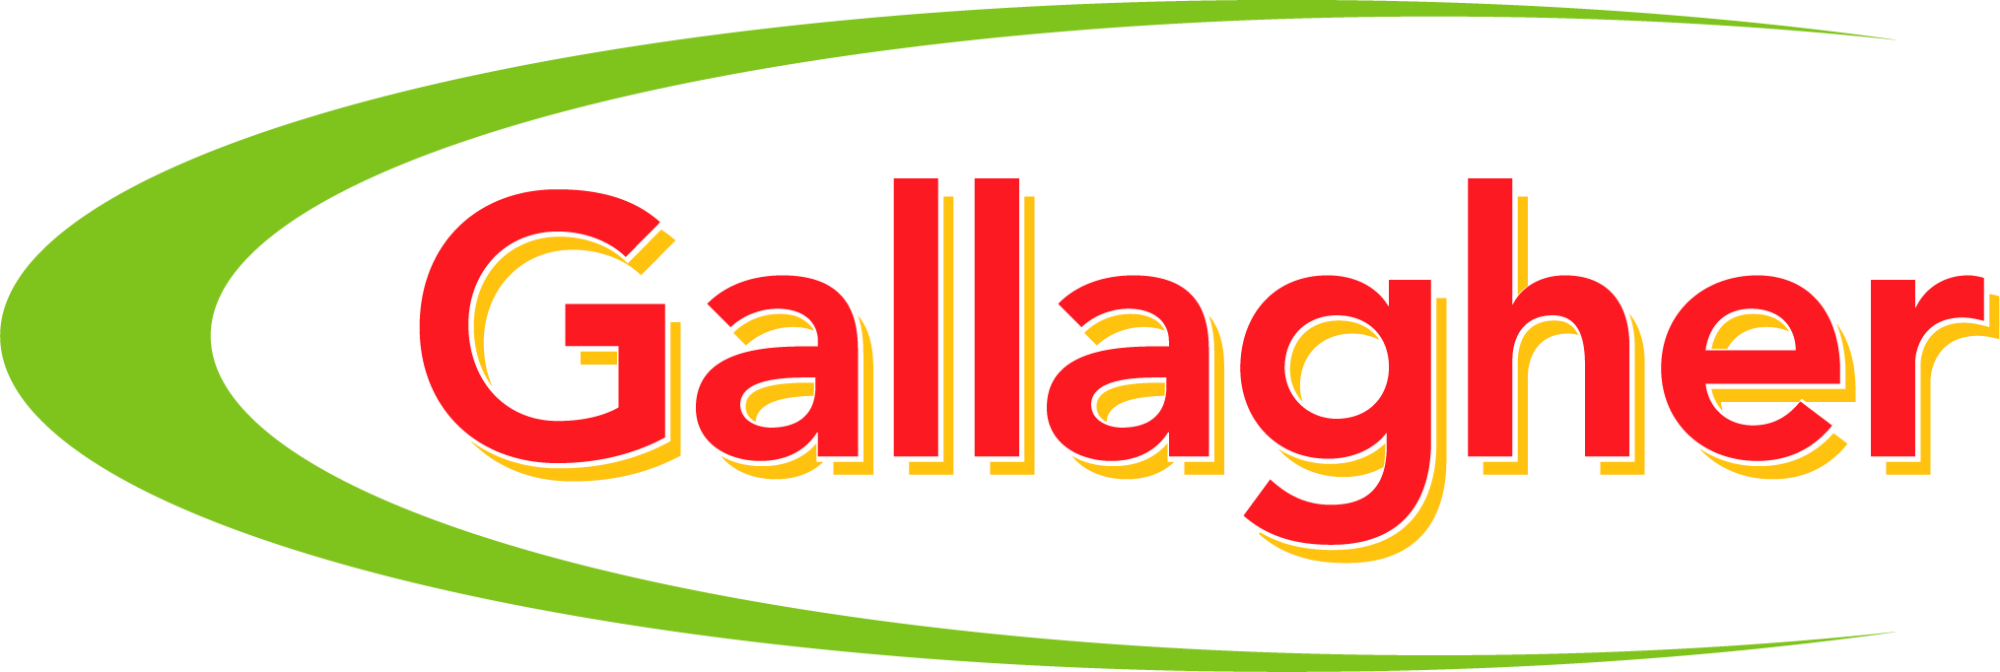 Gallagher Logo 